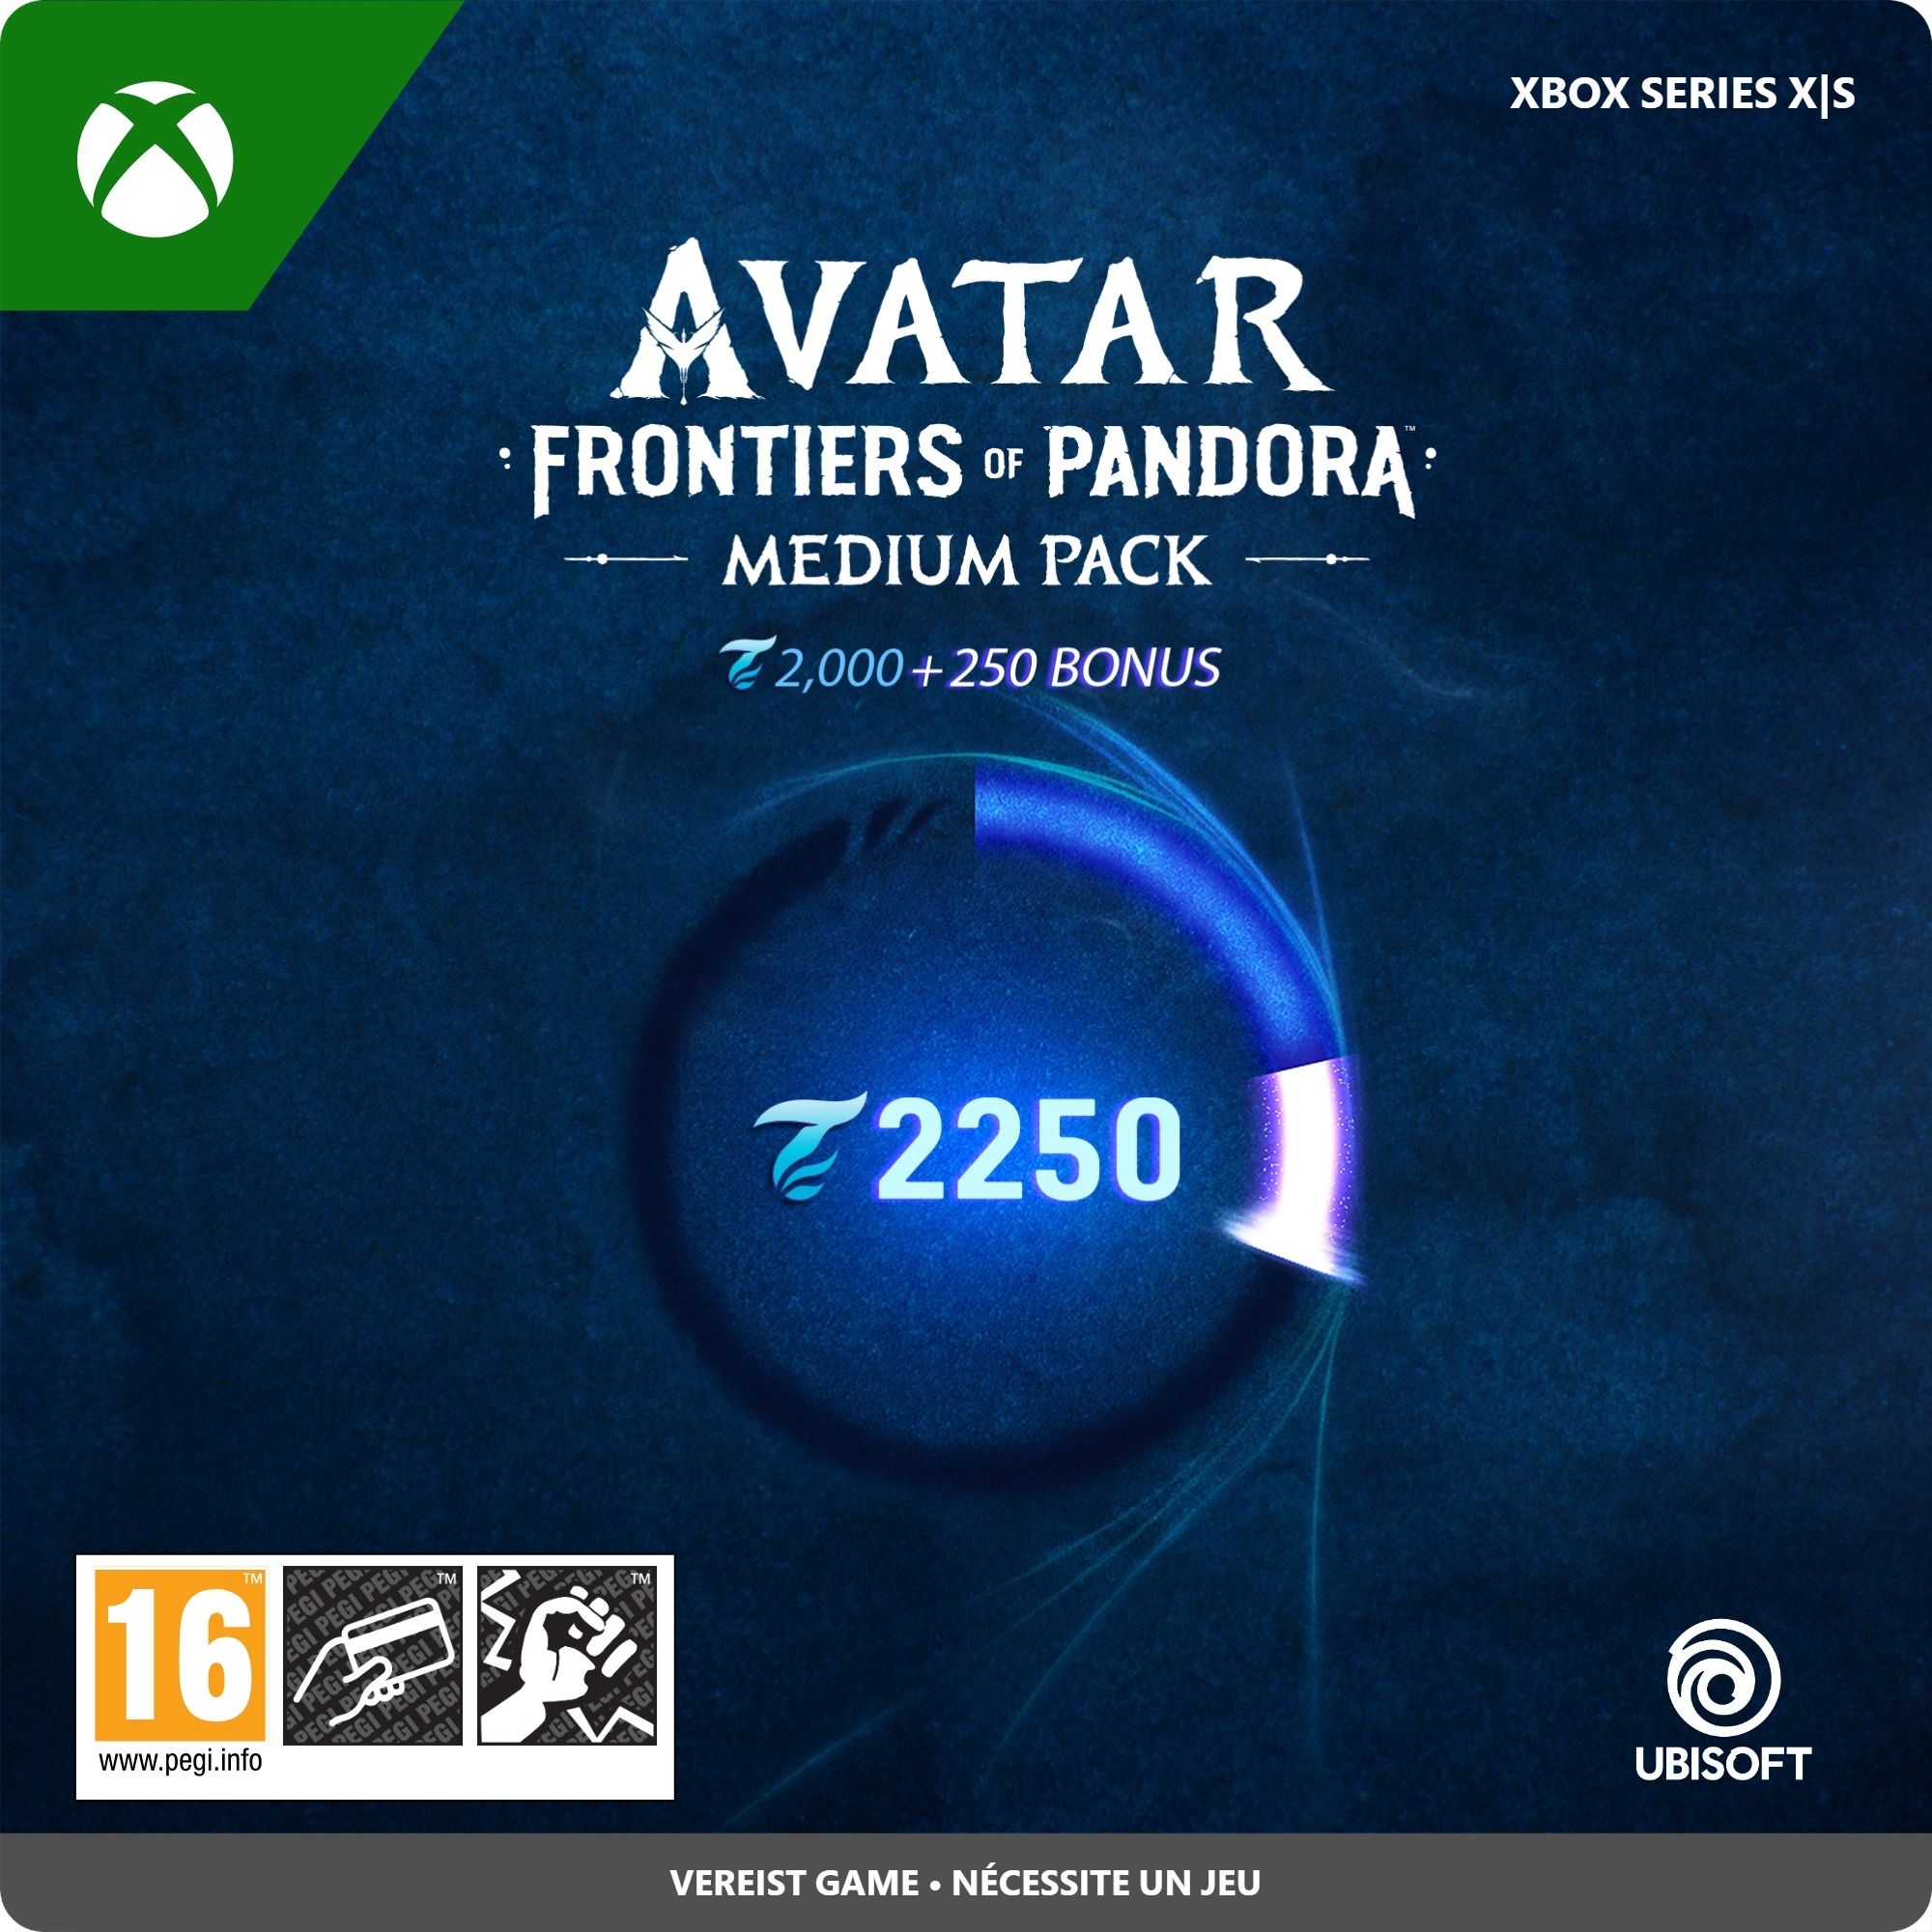 2.250 Xbox Avatar: Frontiers of Pandora Medium Pack Tokens (direct digitaal geleverd).